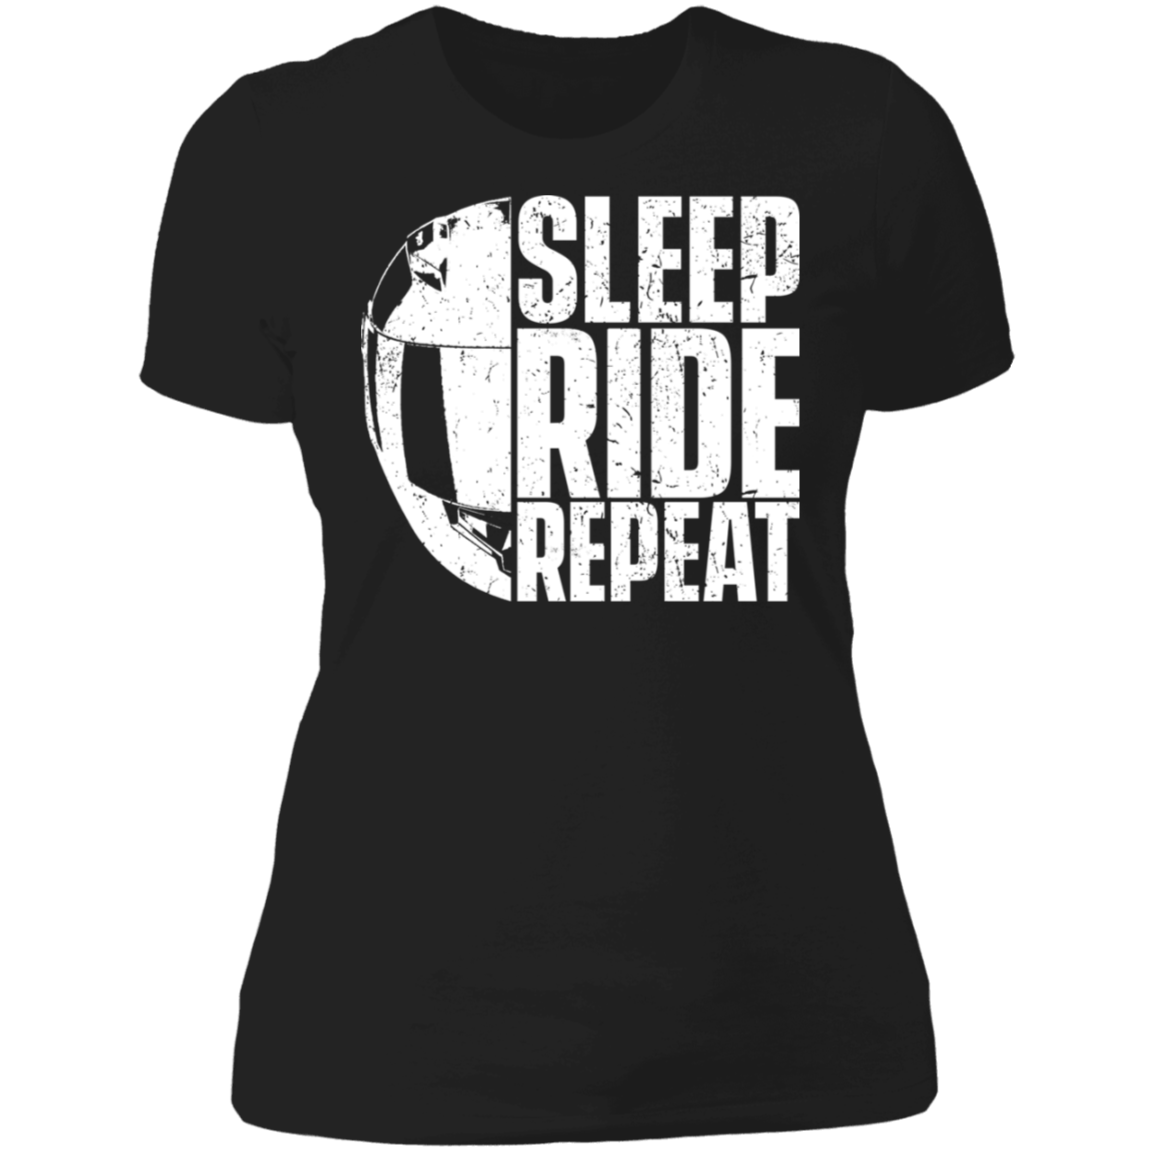 SLEEP RIDE REPEAT LADIES T-SHIRT Black X-Small S M L XL 2XL 3XL